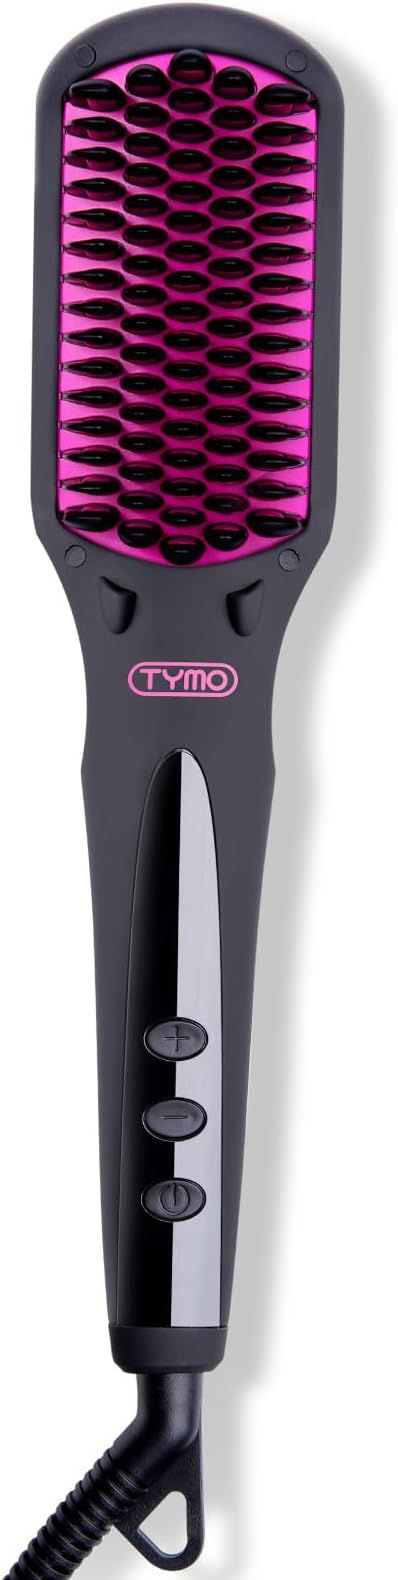 TYMO iONIC Hair Straightener Brush - Enhanced Ionic Straightening Brush with 16 Heat Levels for F... | Amazon (US)